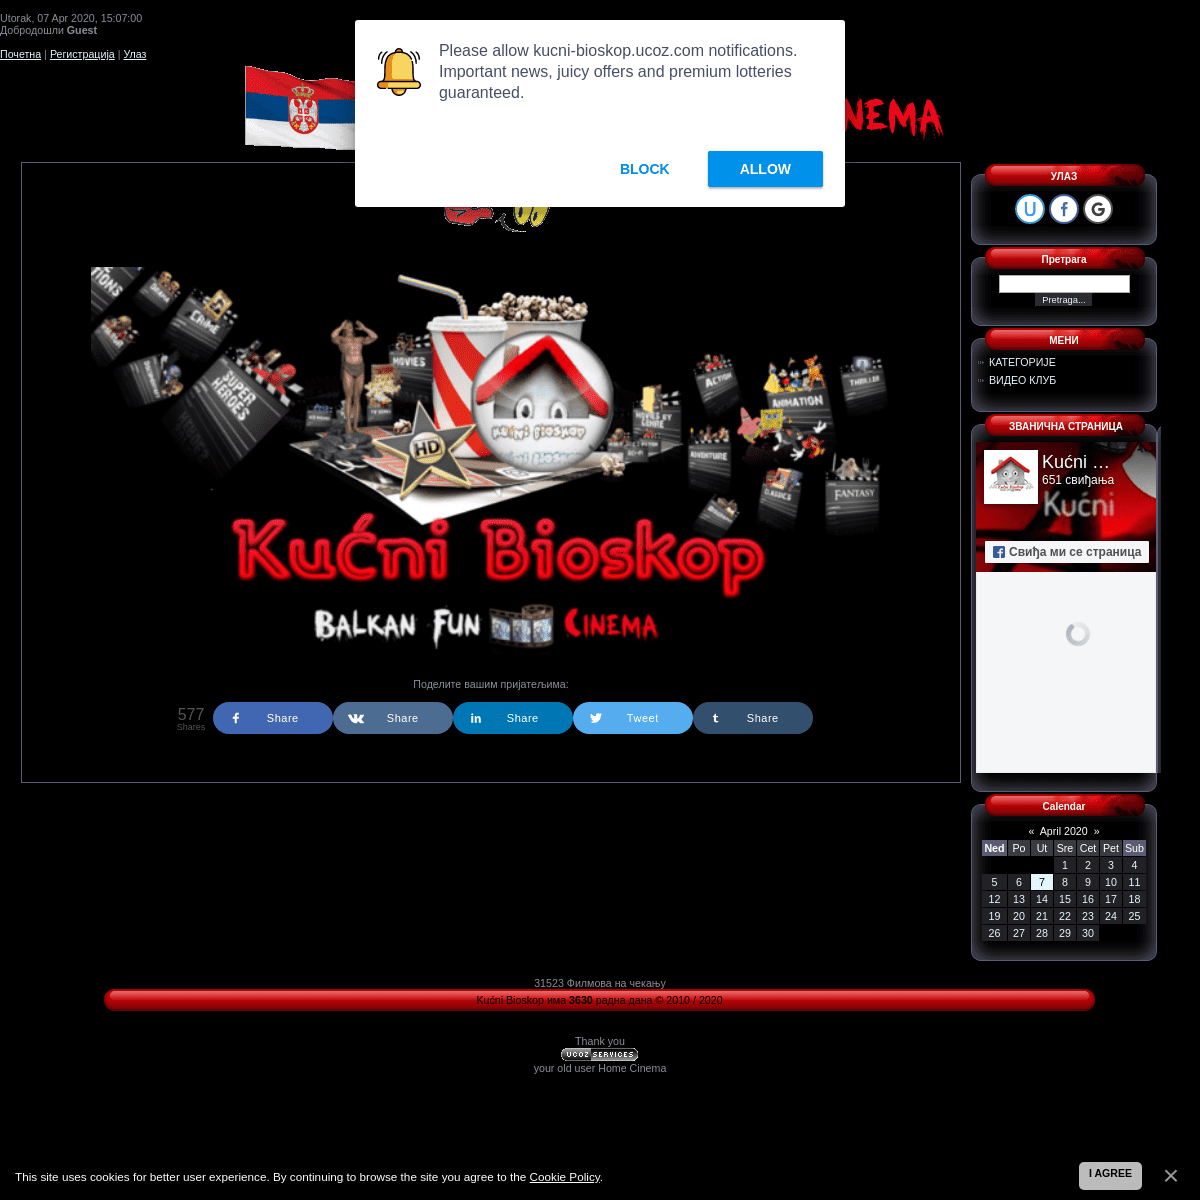 A complete backup of kucni-bioskop.ucoz.com